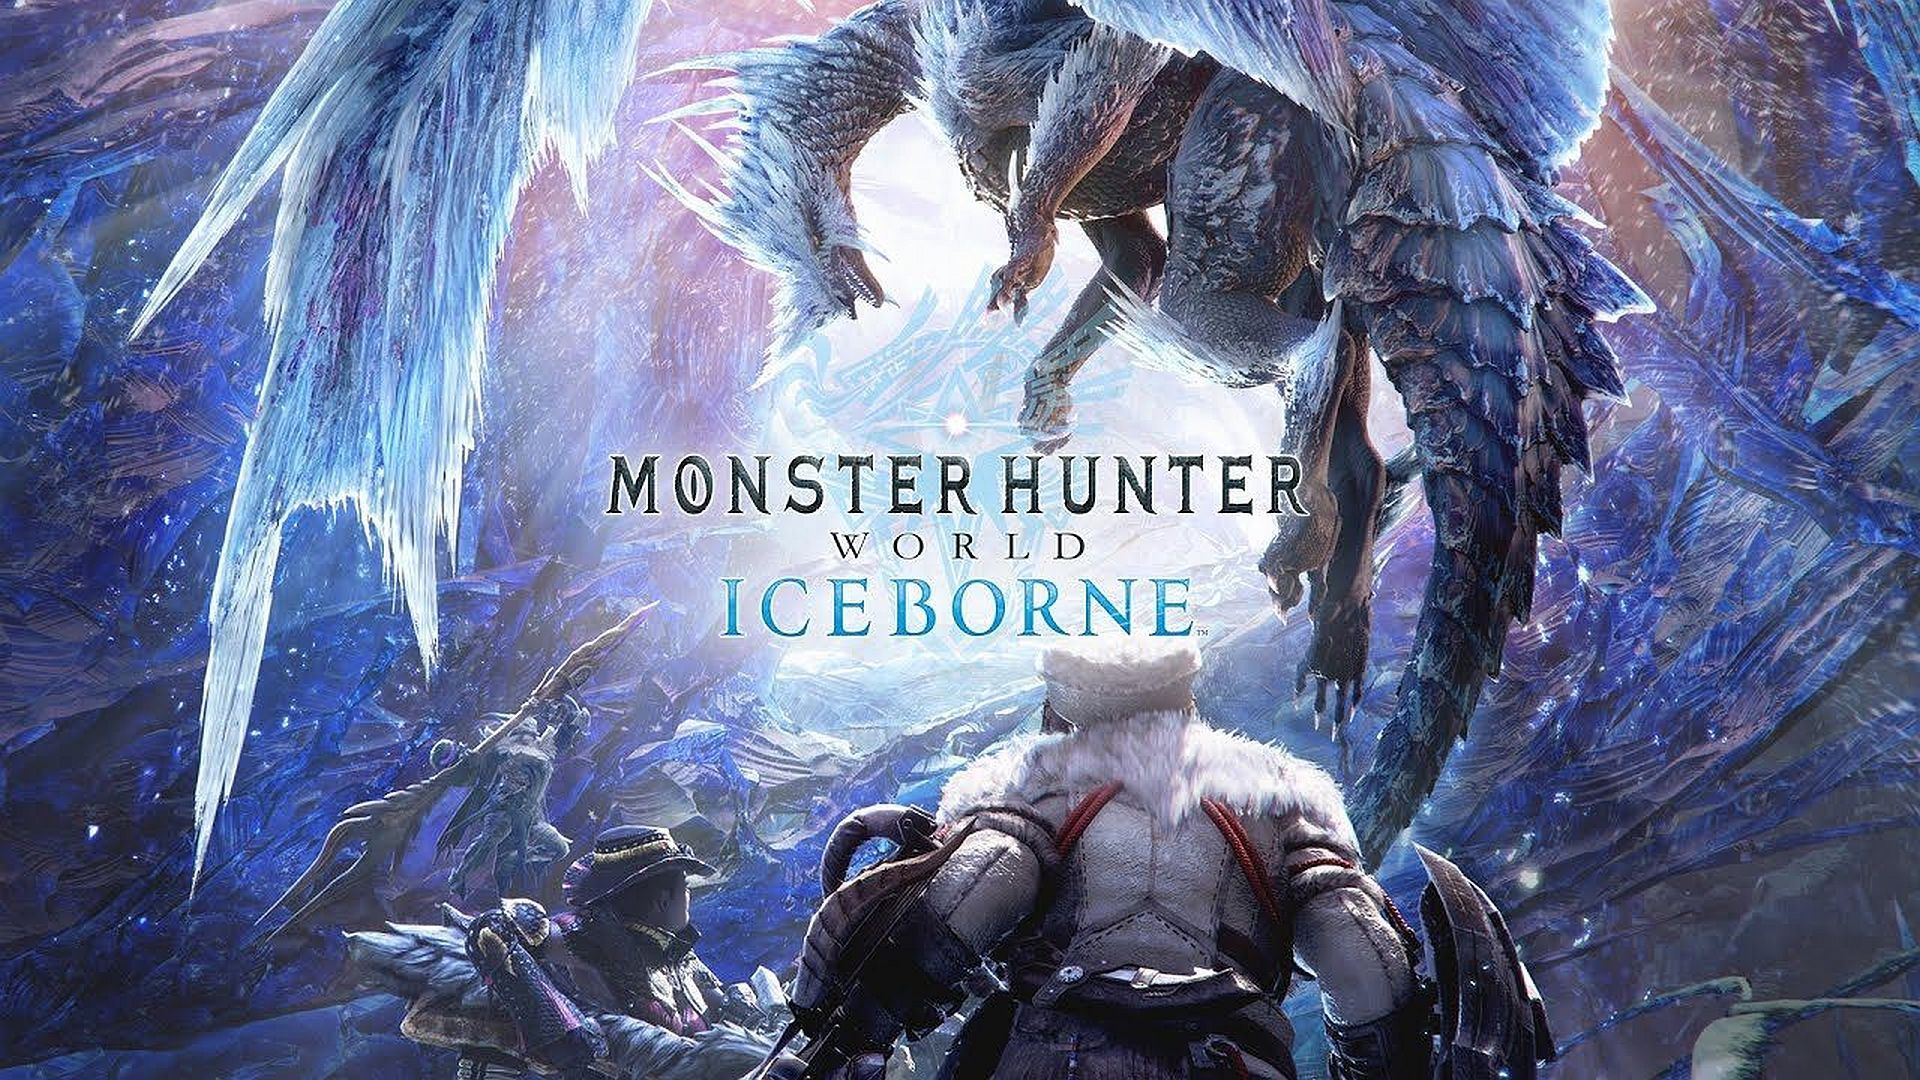 Monster Hunter World: Iceborne är nu till försäljning! Det här är din lanserings trailer